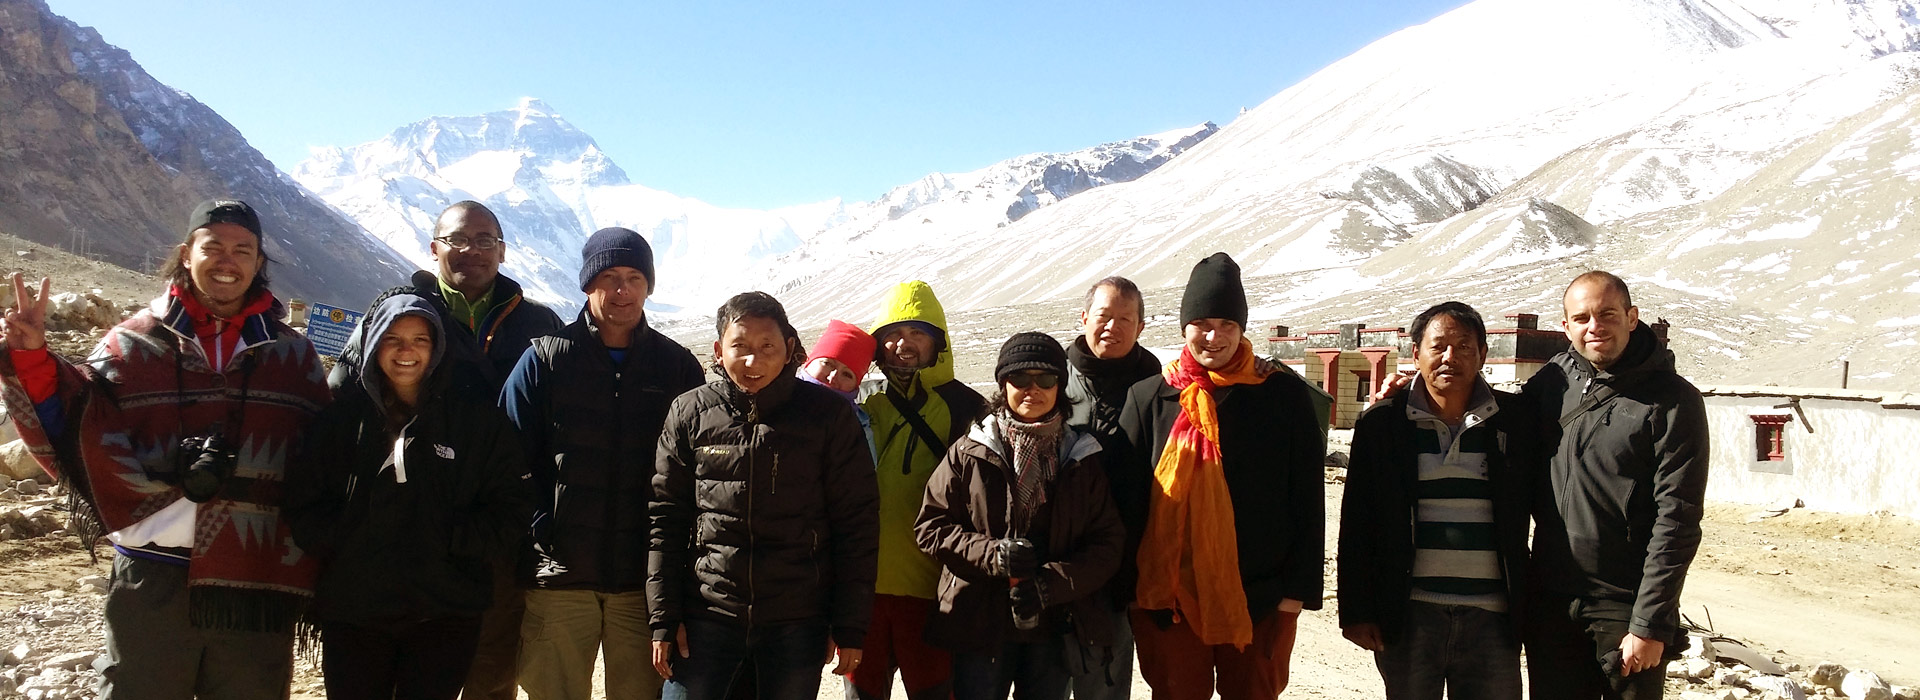 Tibet Group Tours